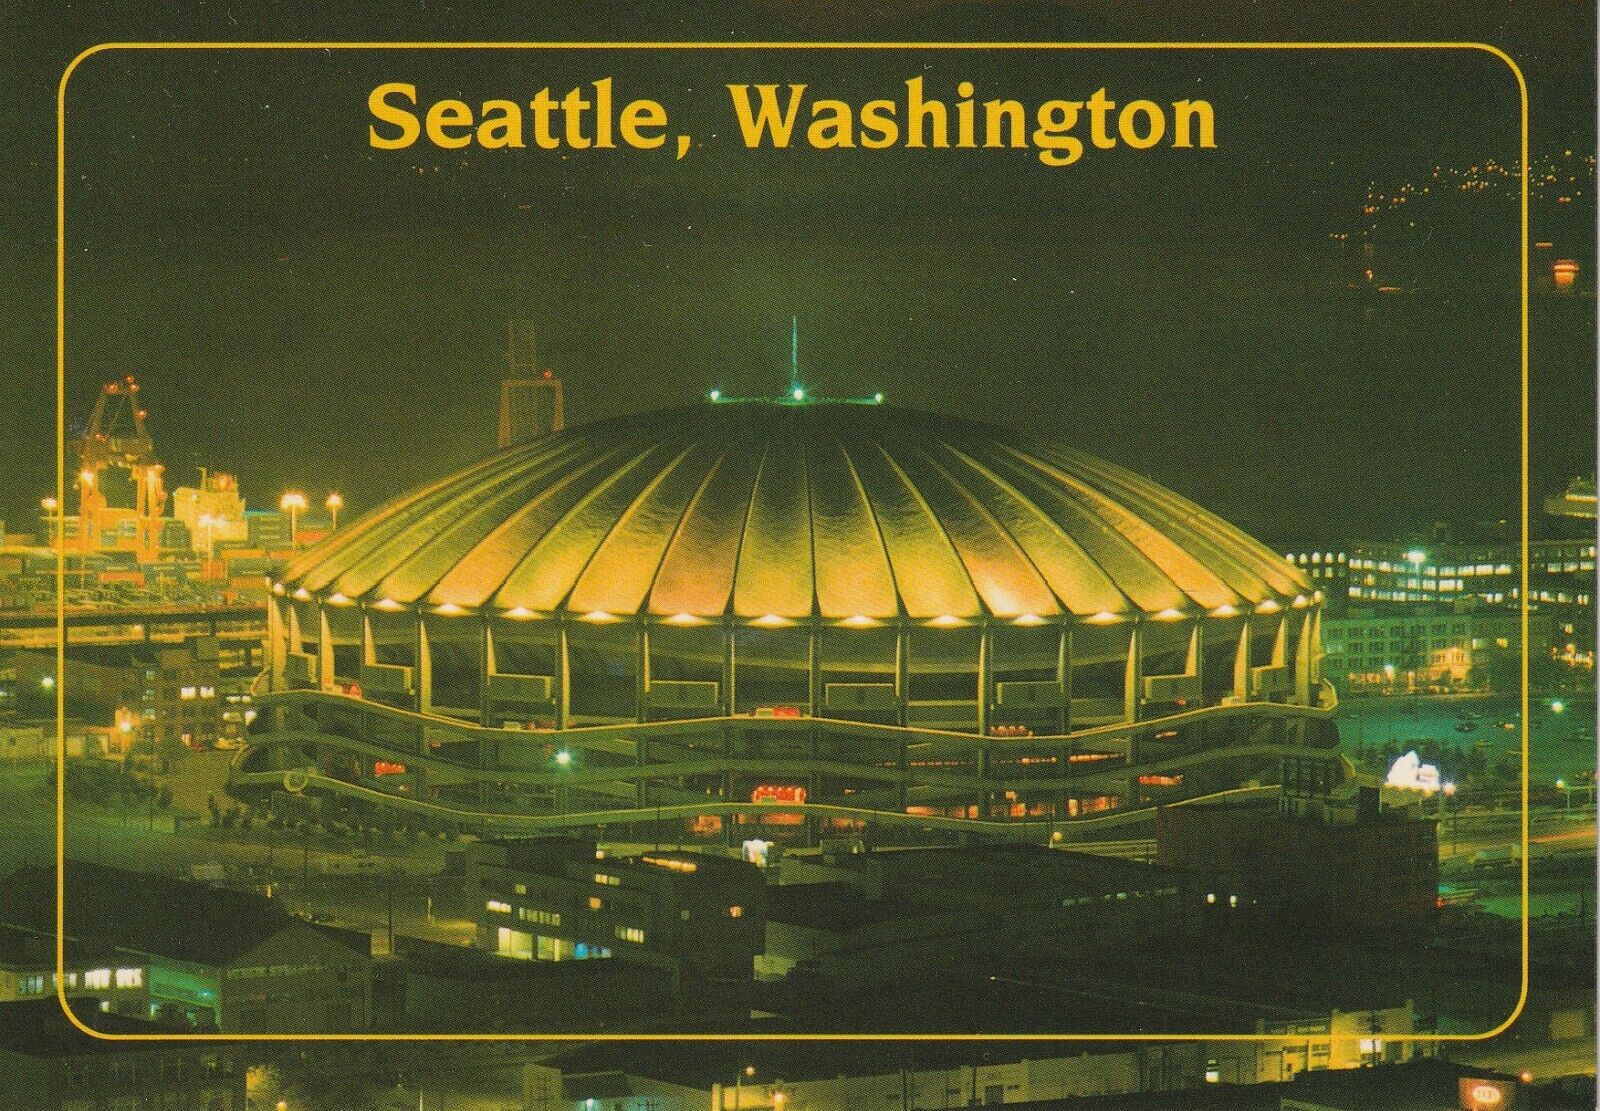 Seattle Kingdome Mariners Baseball, Seahawks Football Stadium Postcard